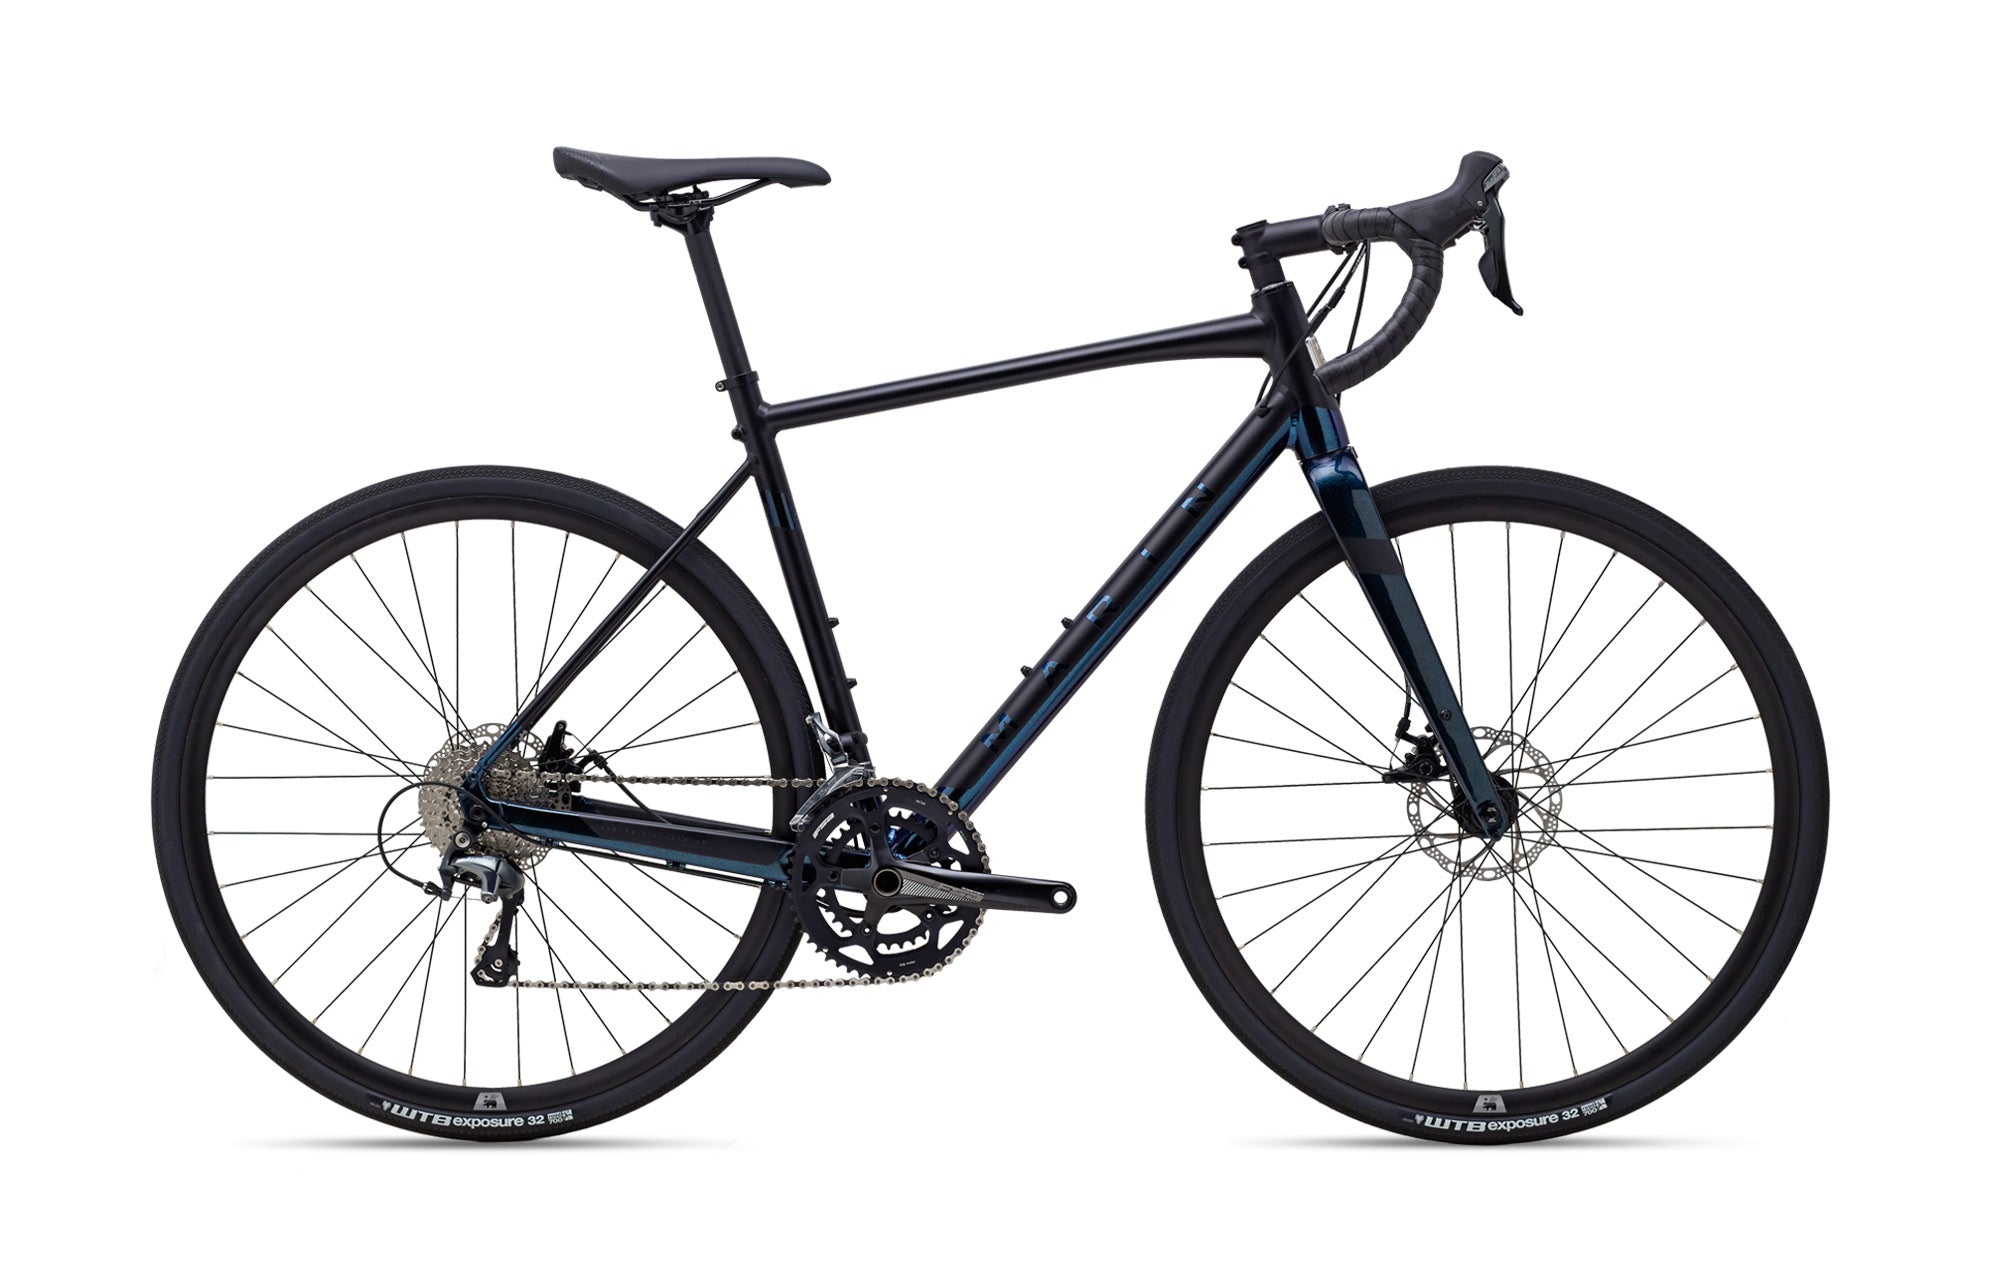 Bicicleta Gravel Gestalt 2 (2021) Marin Bikes California negra